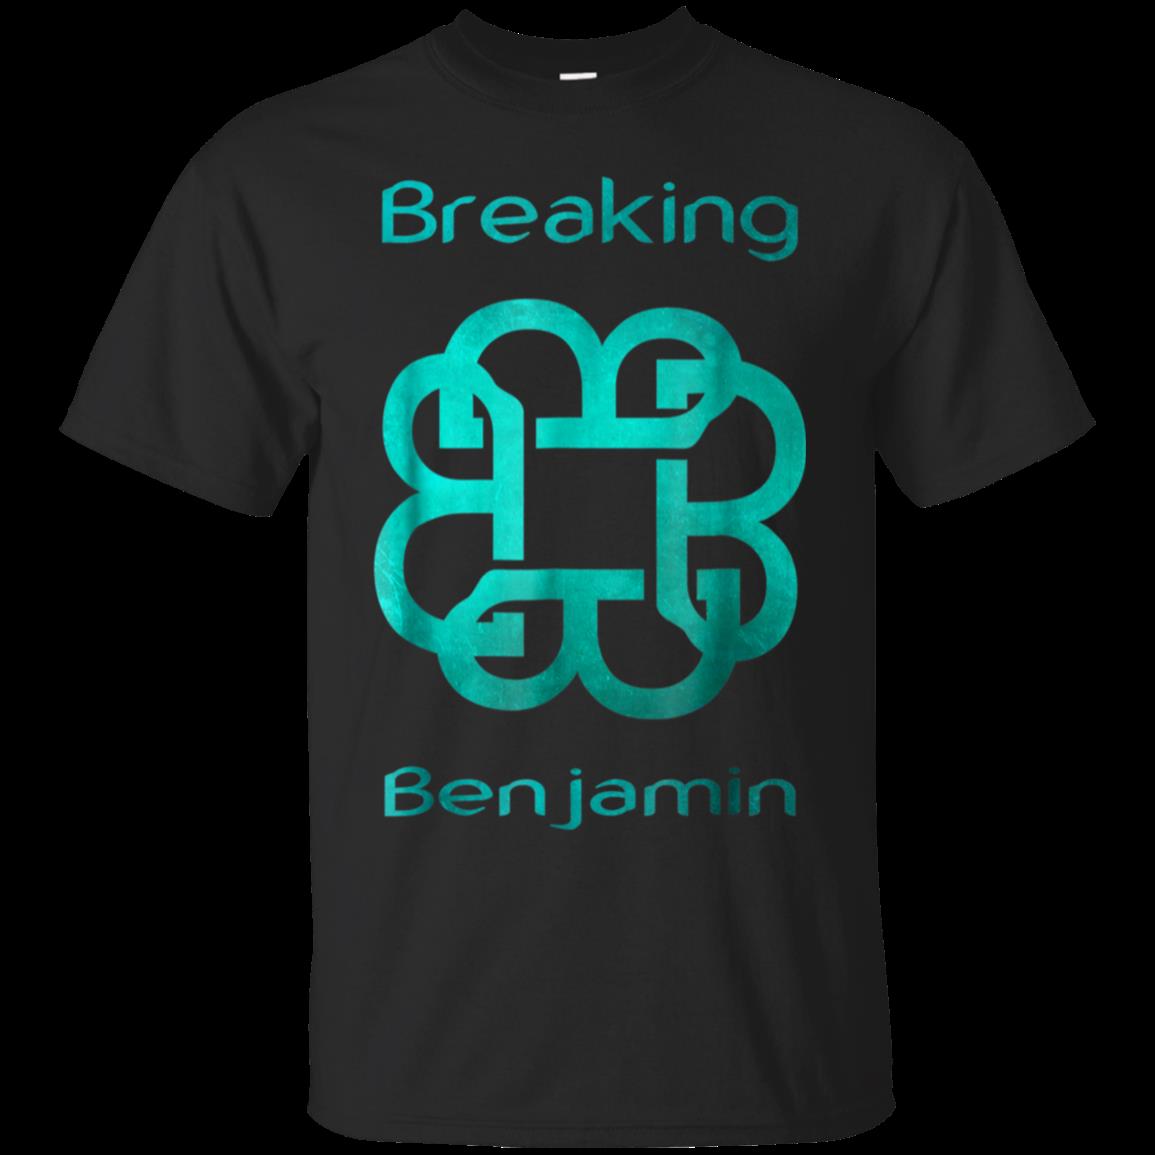 Breaking Shirt Band Lover Benjamin Tour 2018 Cotton Shirt